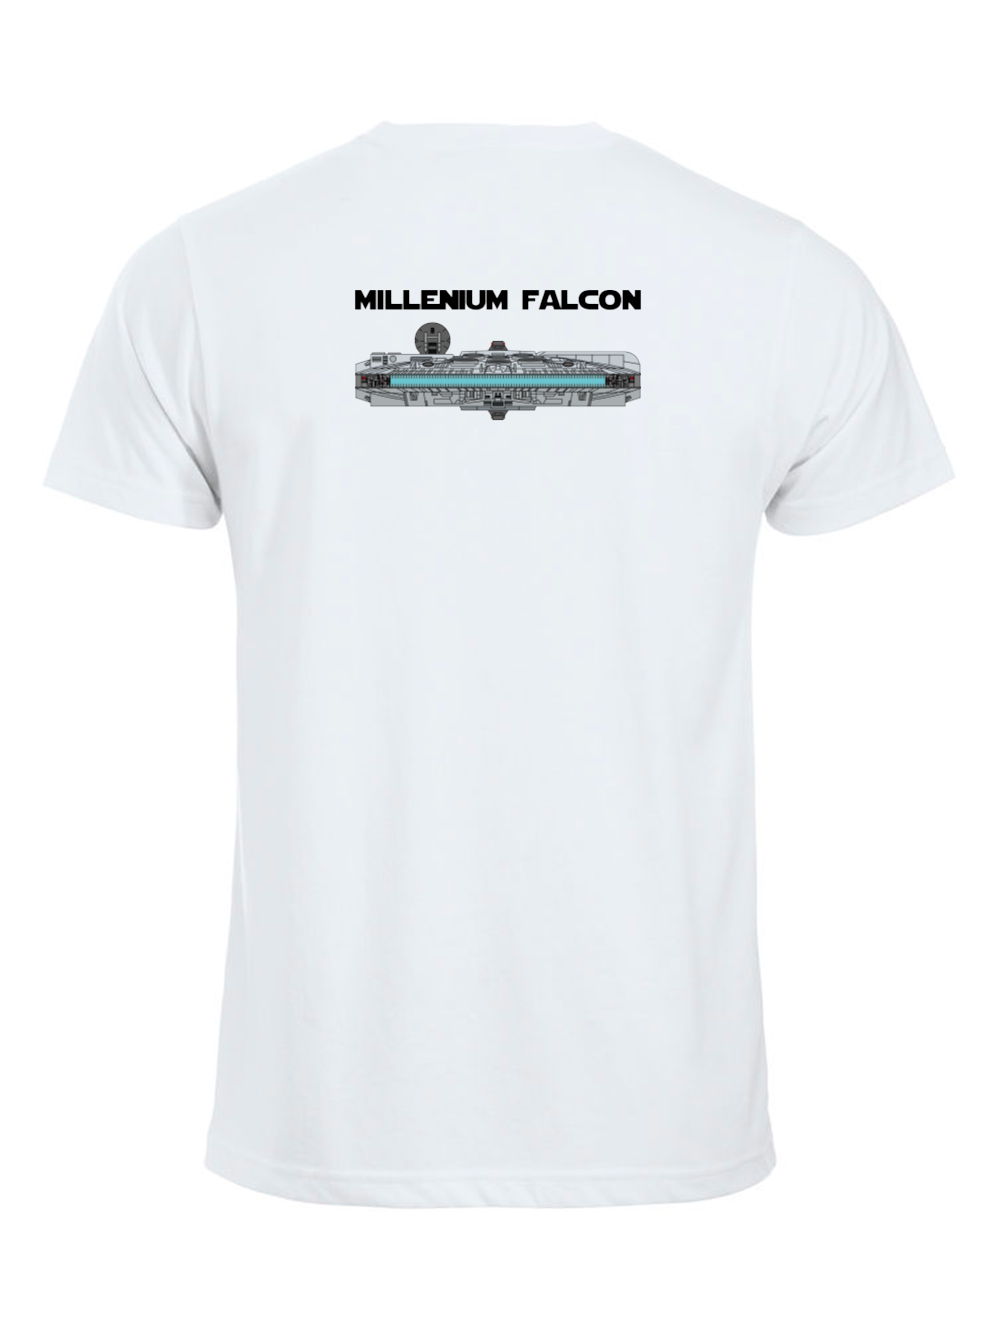 MILLENIUM FALCON T-SHIRT